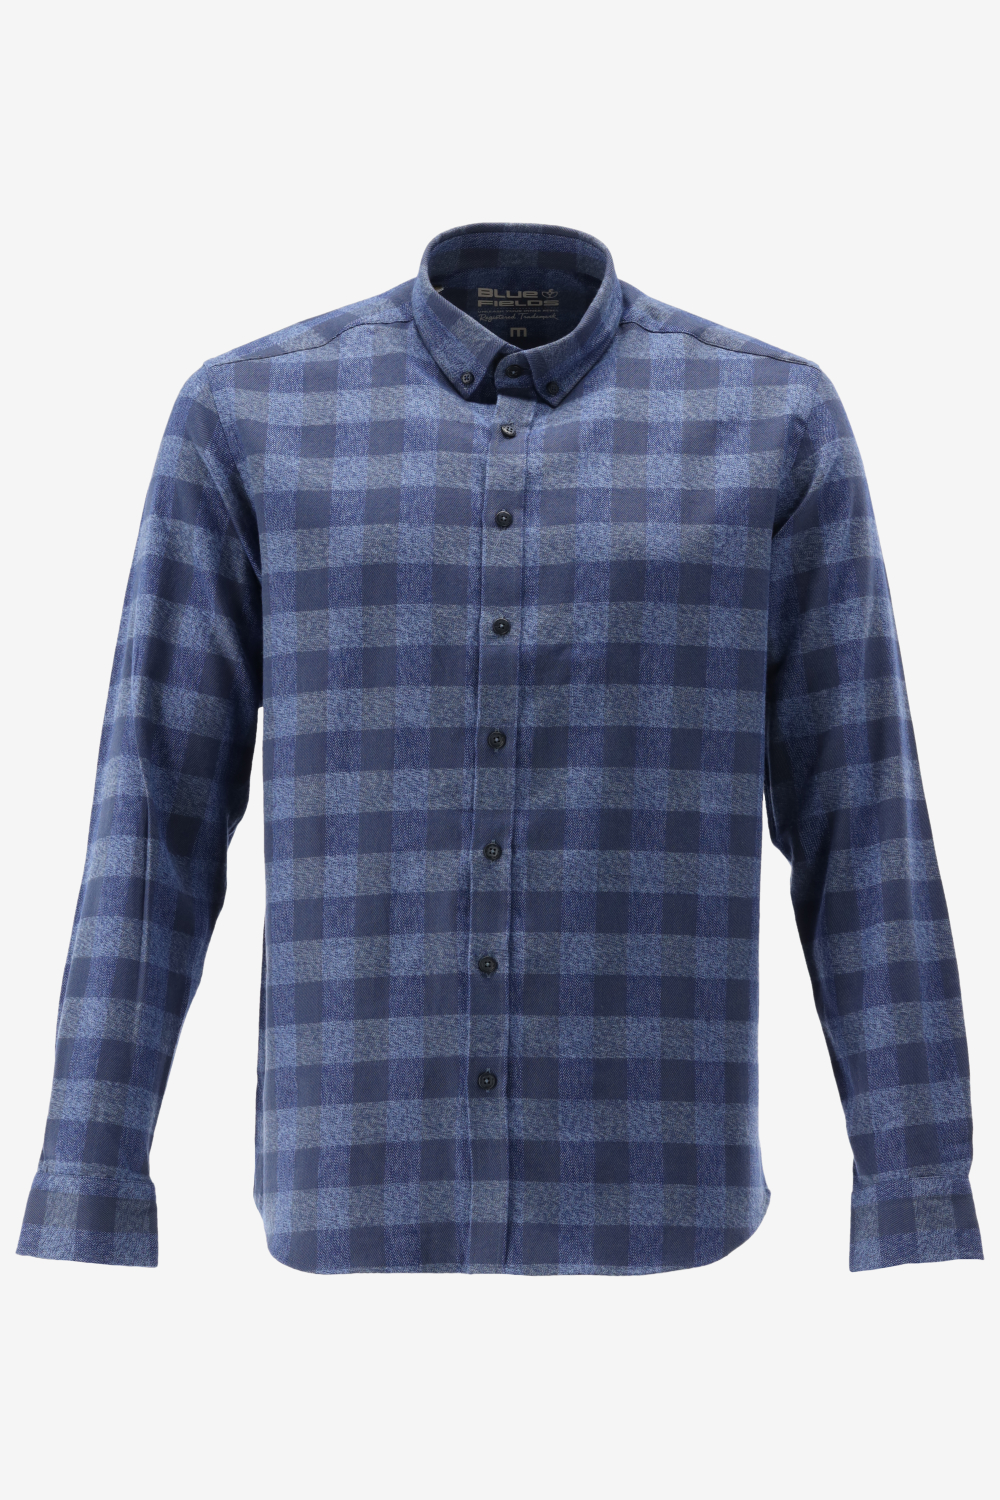 BlueFields Overhemd Shirt Ls Checked 21542018 5957 Mannen Maat - M